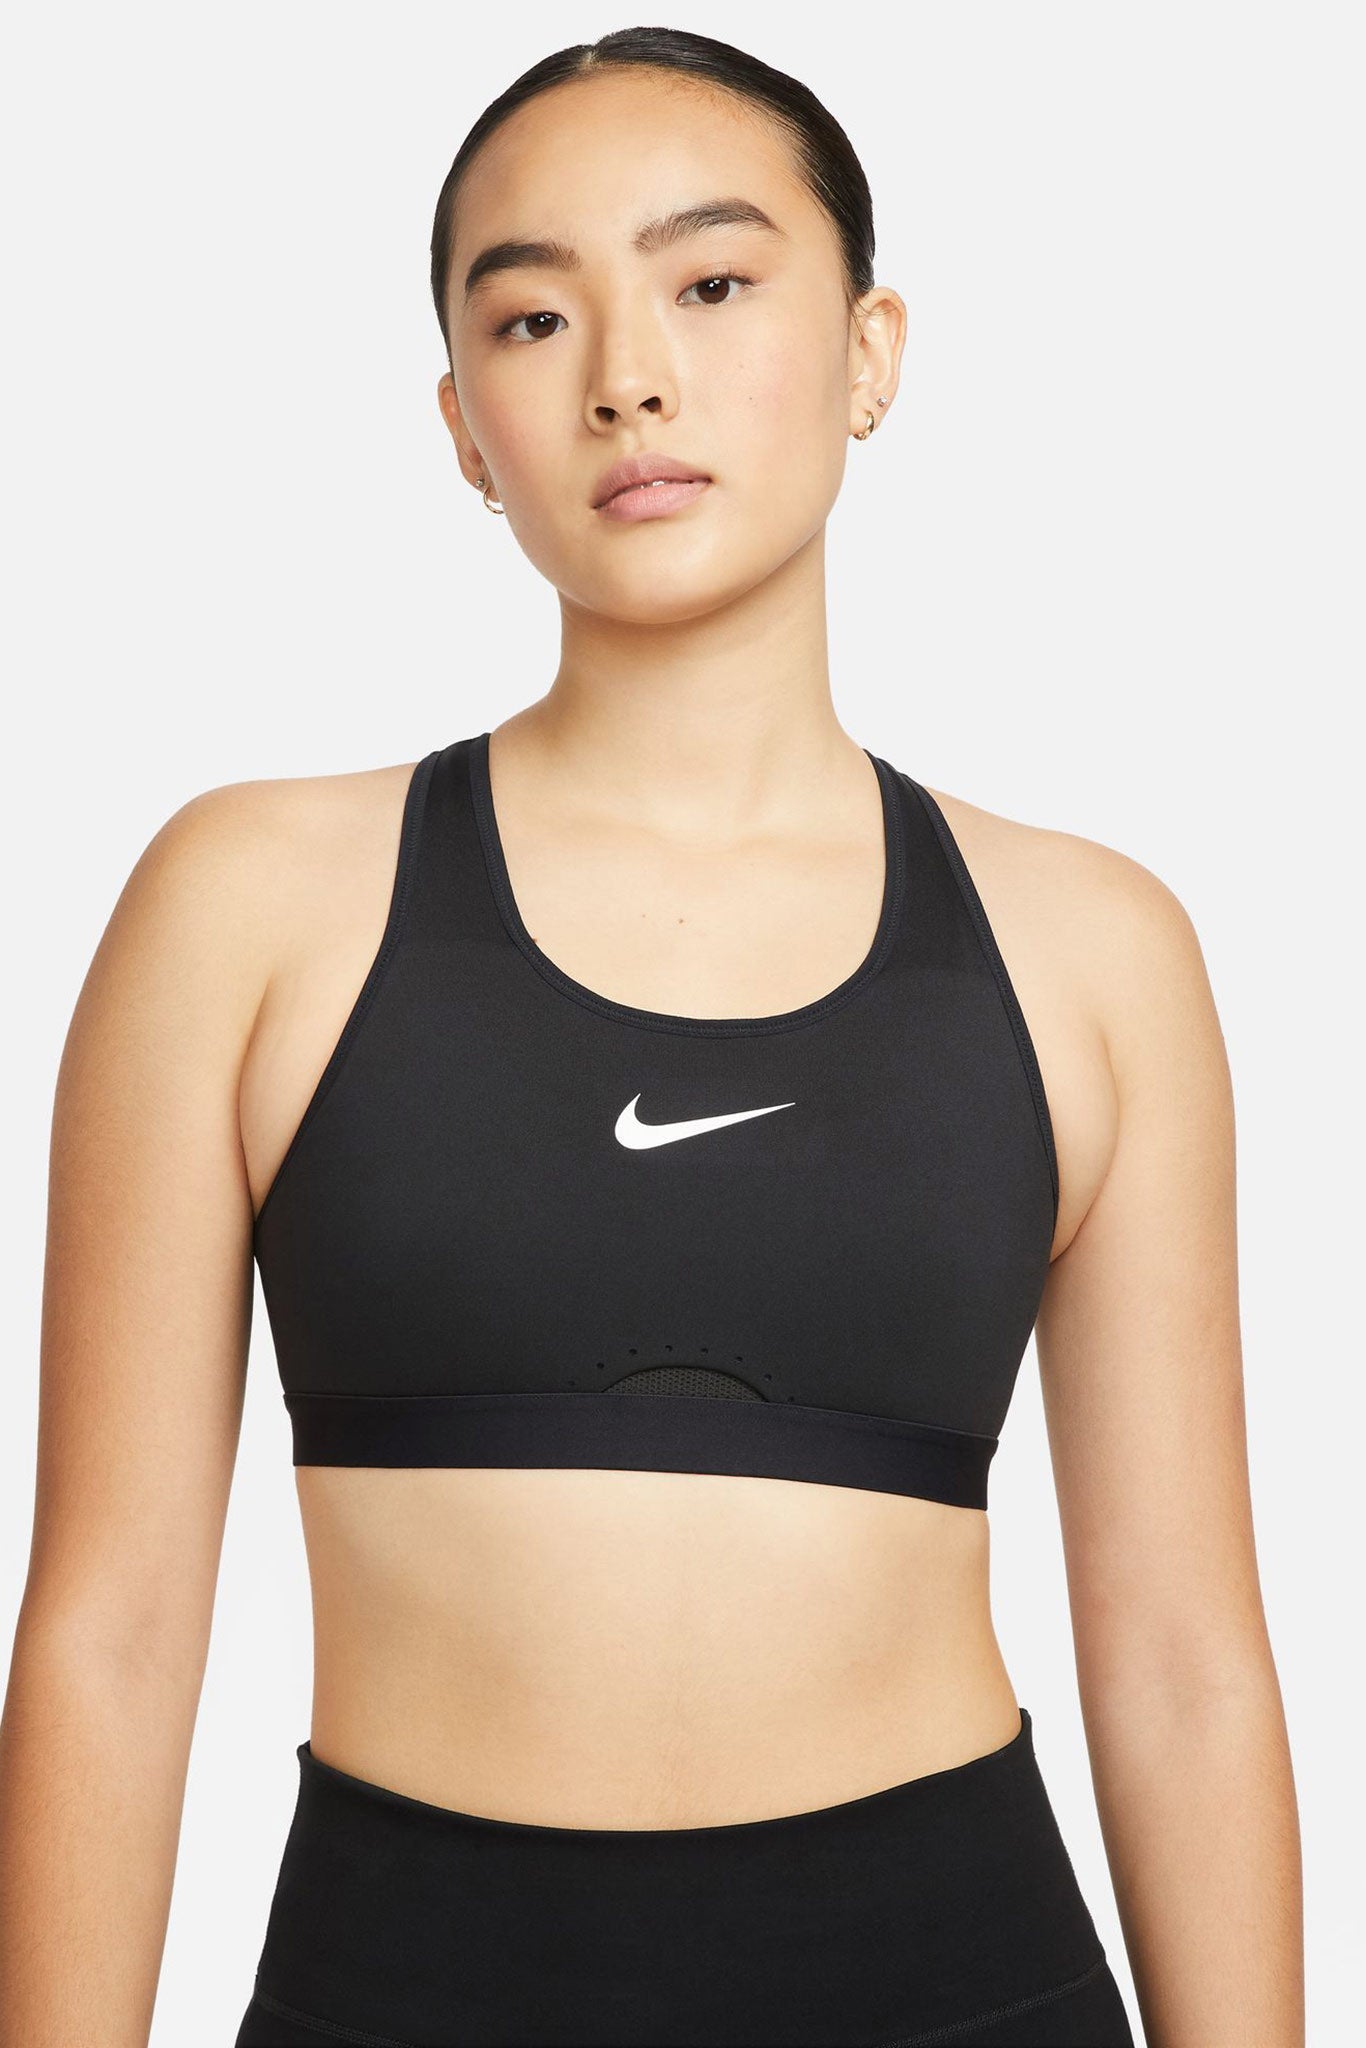 Nike® Pro Dri-FIT Graphic Cropped Top Bra DM7689 Black/White Women’s SZ XL  1X